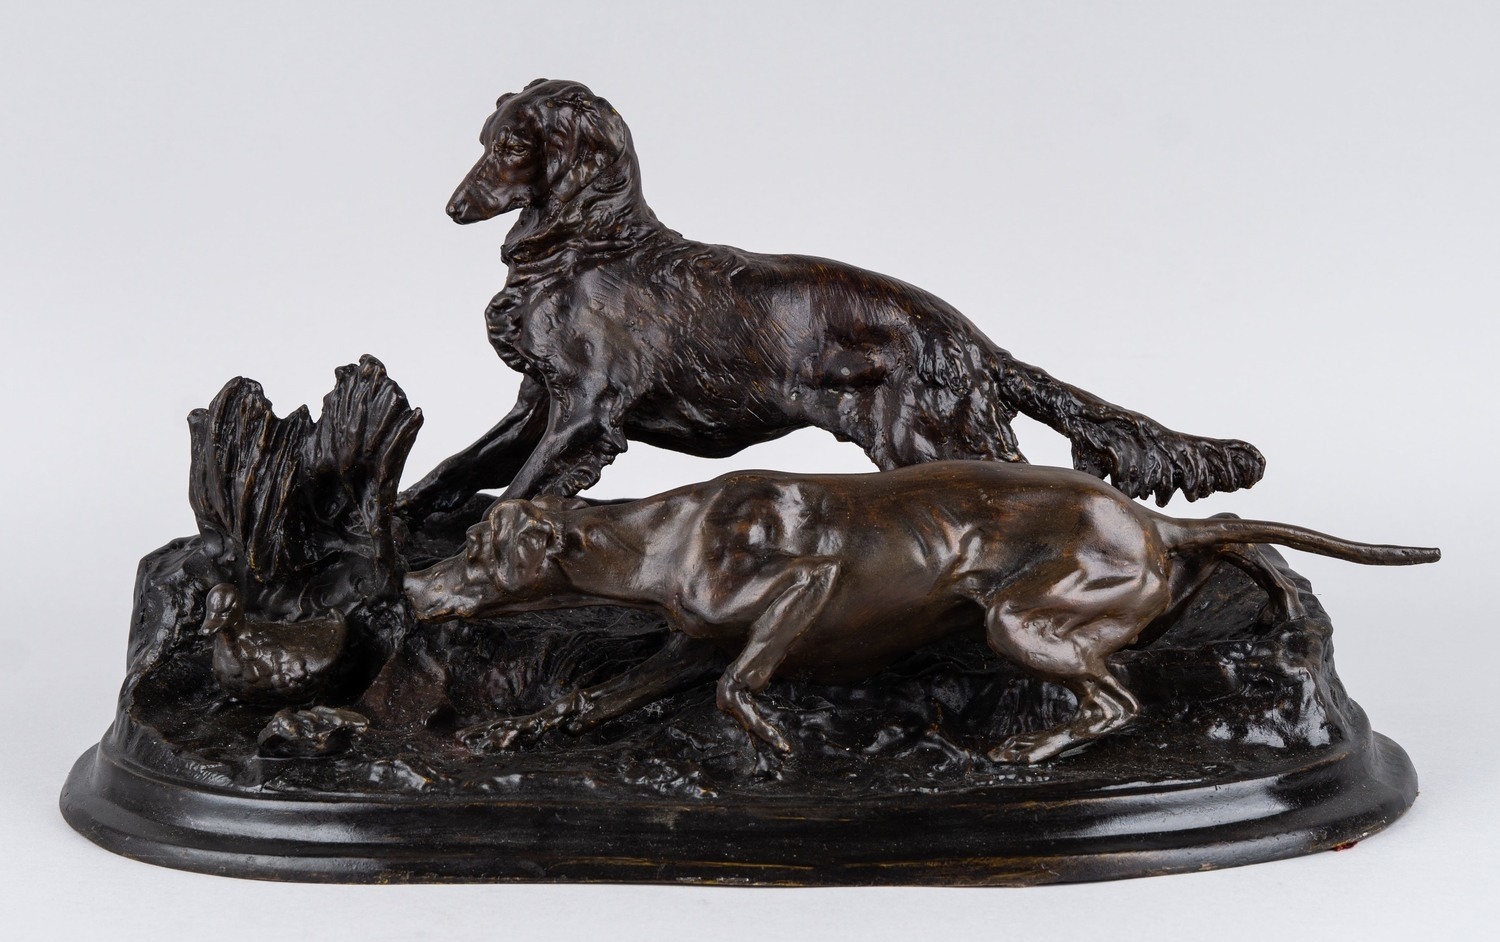 Бронзовая скульптура «Собаки на стойке». Скульптор Жан-Пьер Мэн. Франция, XIX век